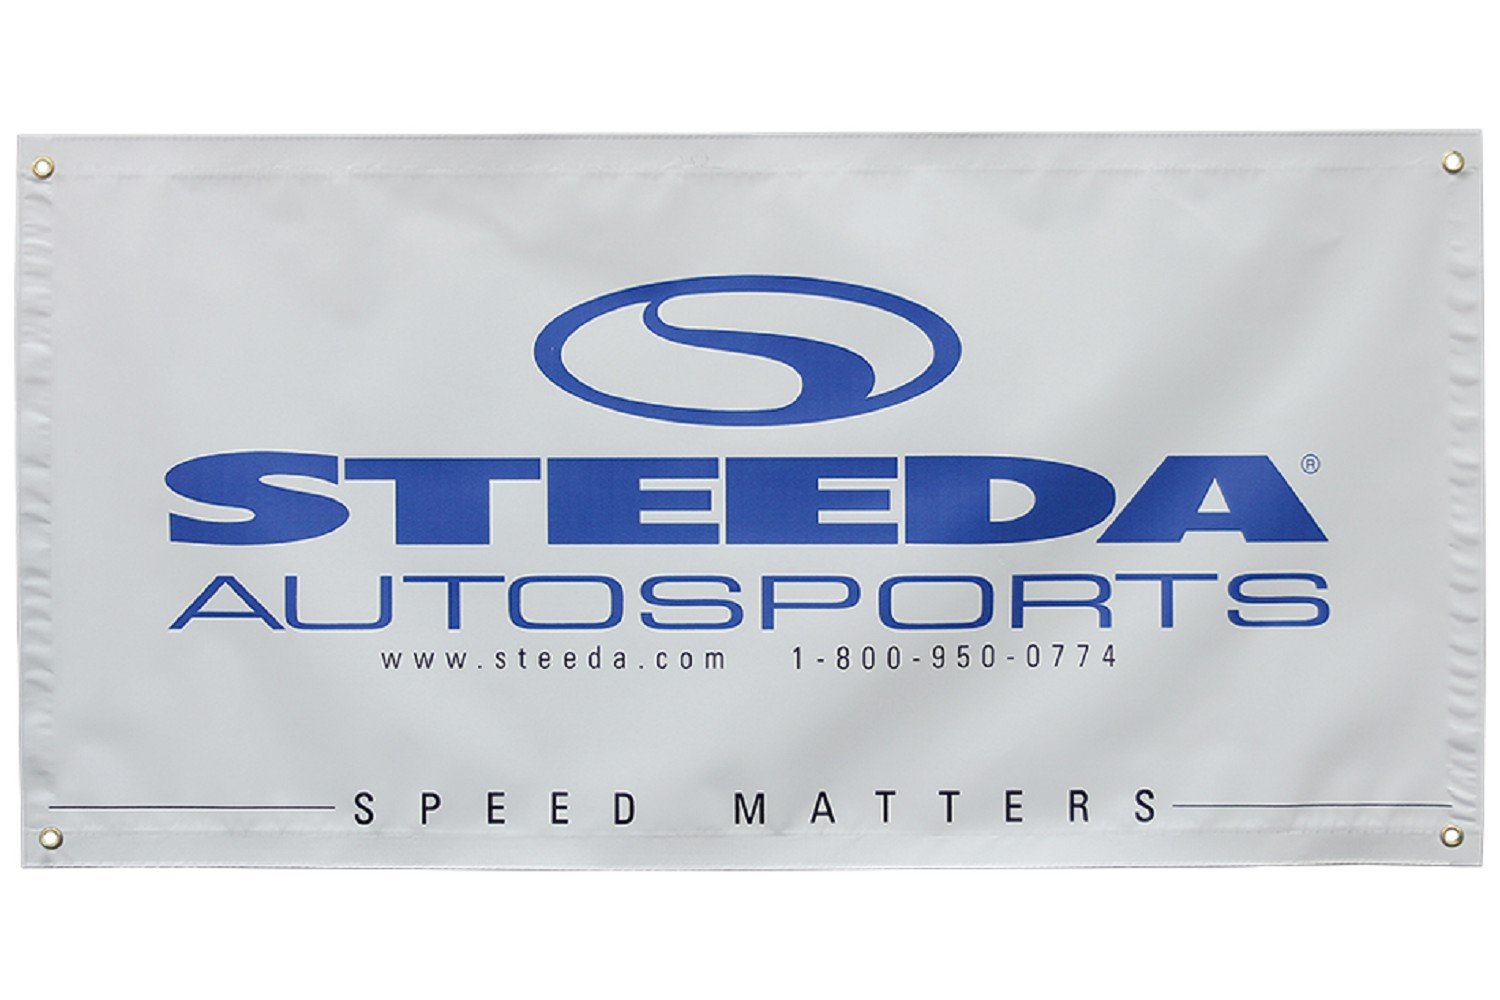 Bannière de l'atelier Steeda Autosports